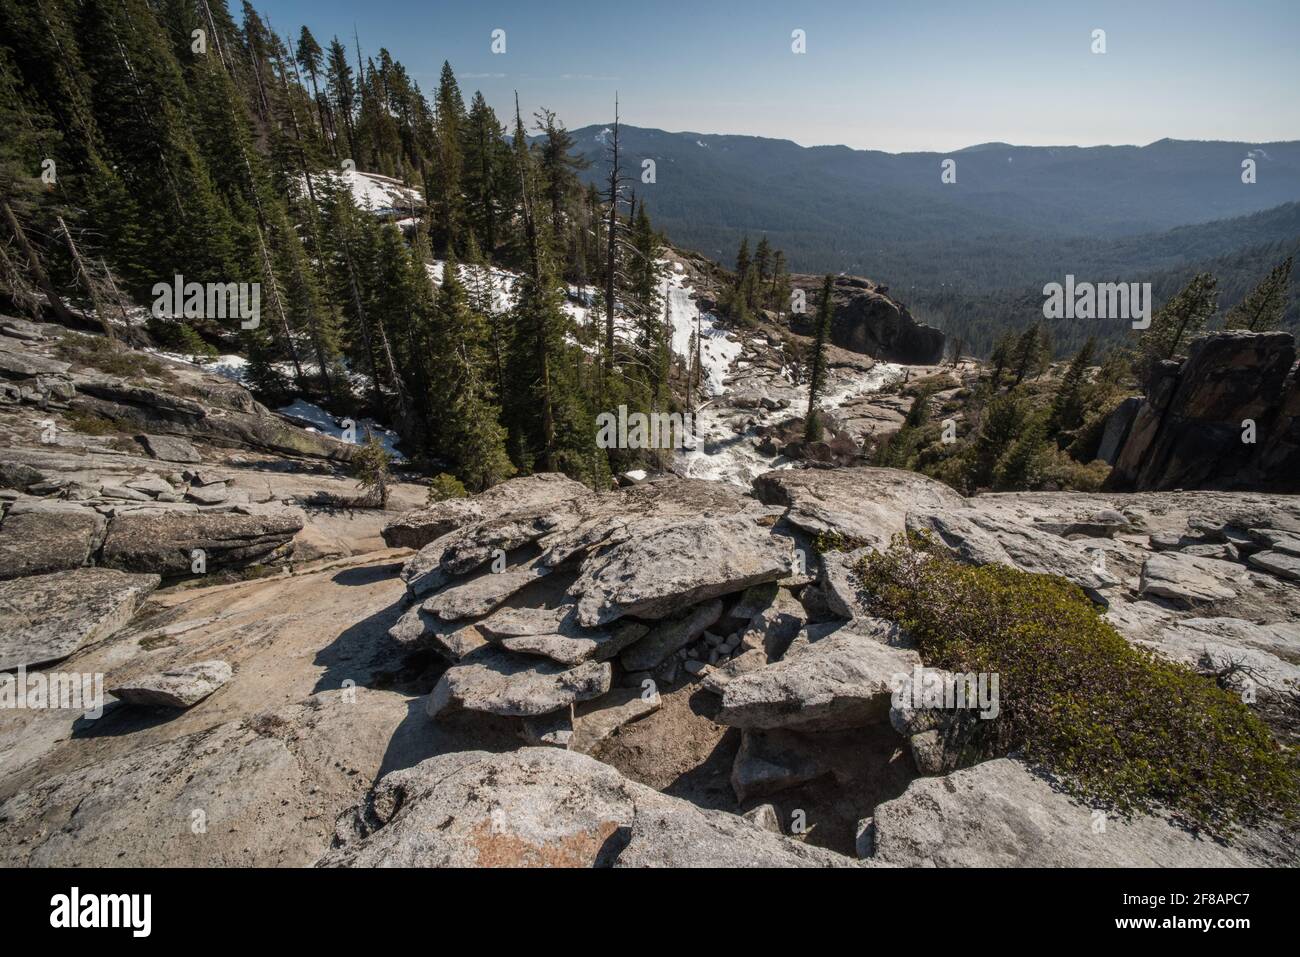 Une vue panoramique sur la nature sauvage et la forêt immaculées dans les montagnes de la Sierra Nevada du parc national de Yosemite, Californie. Banque D'Images